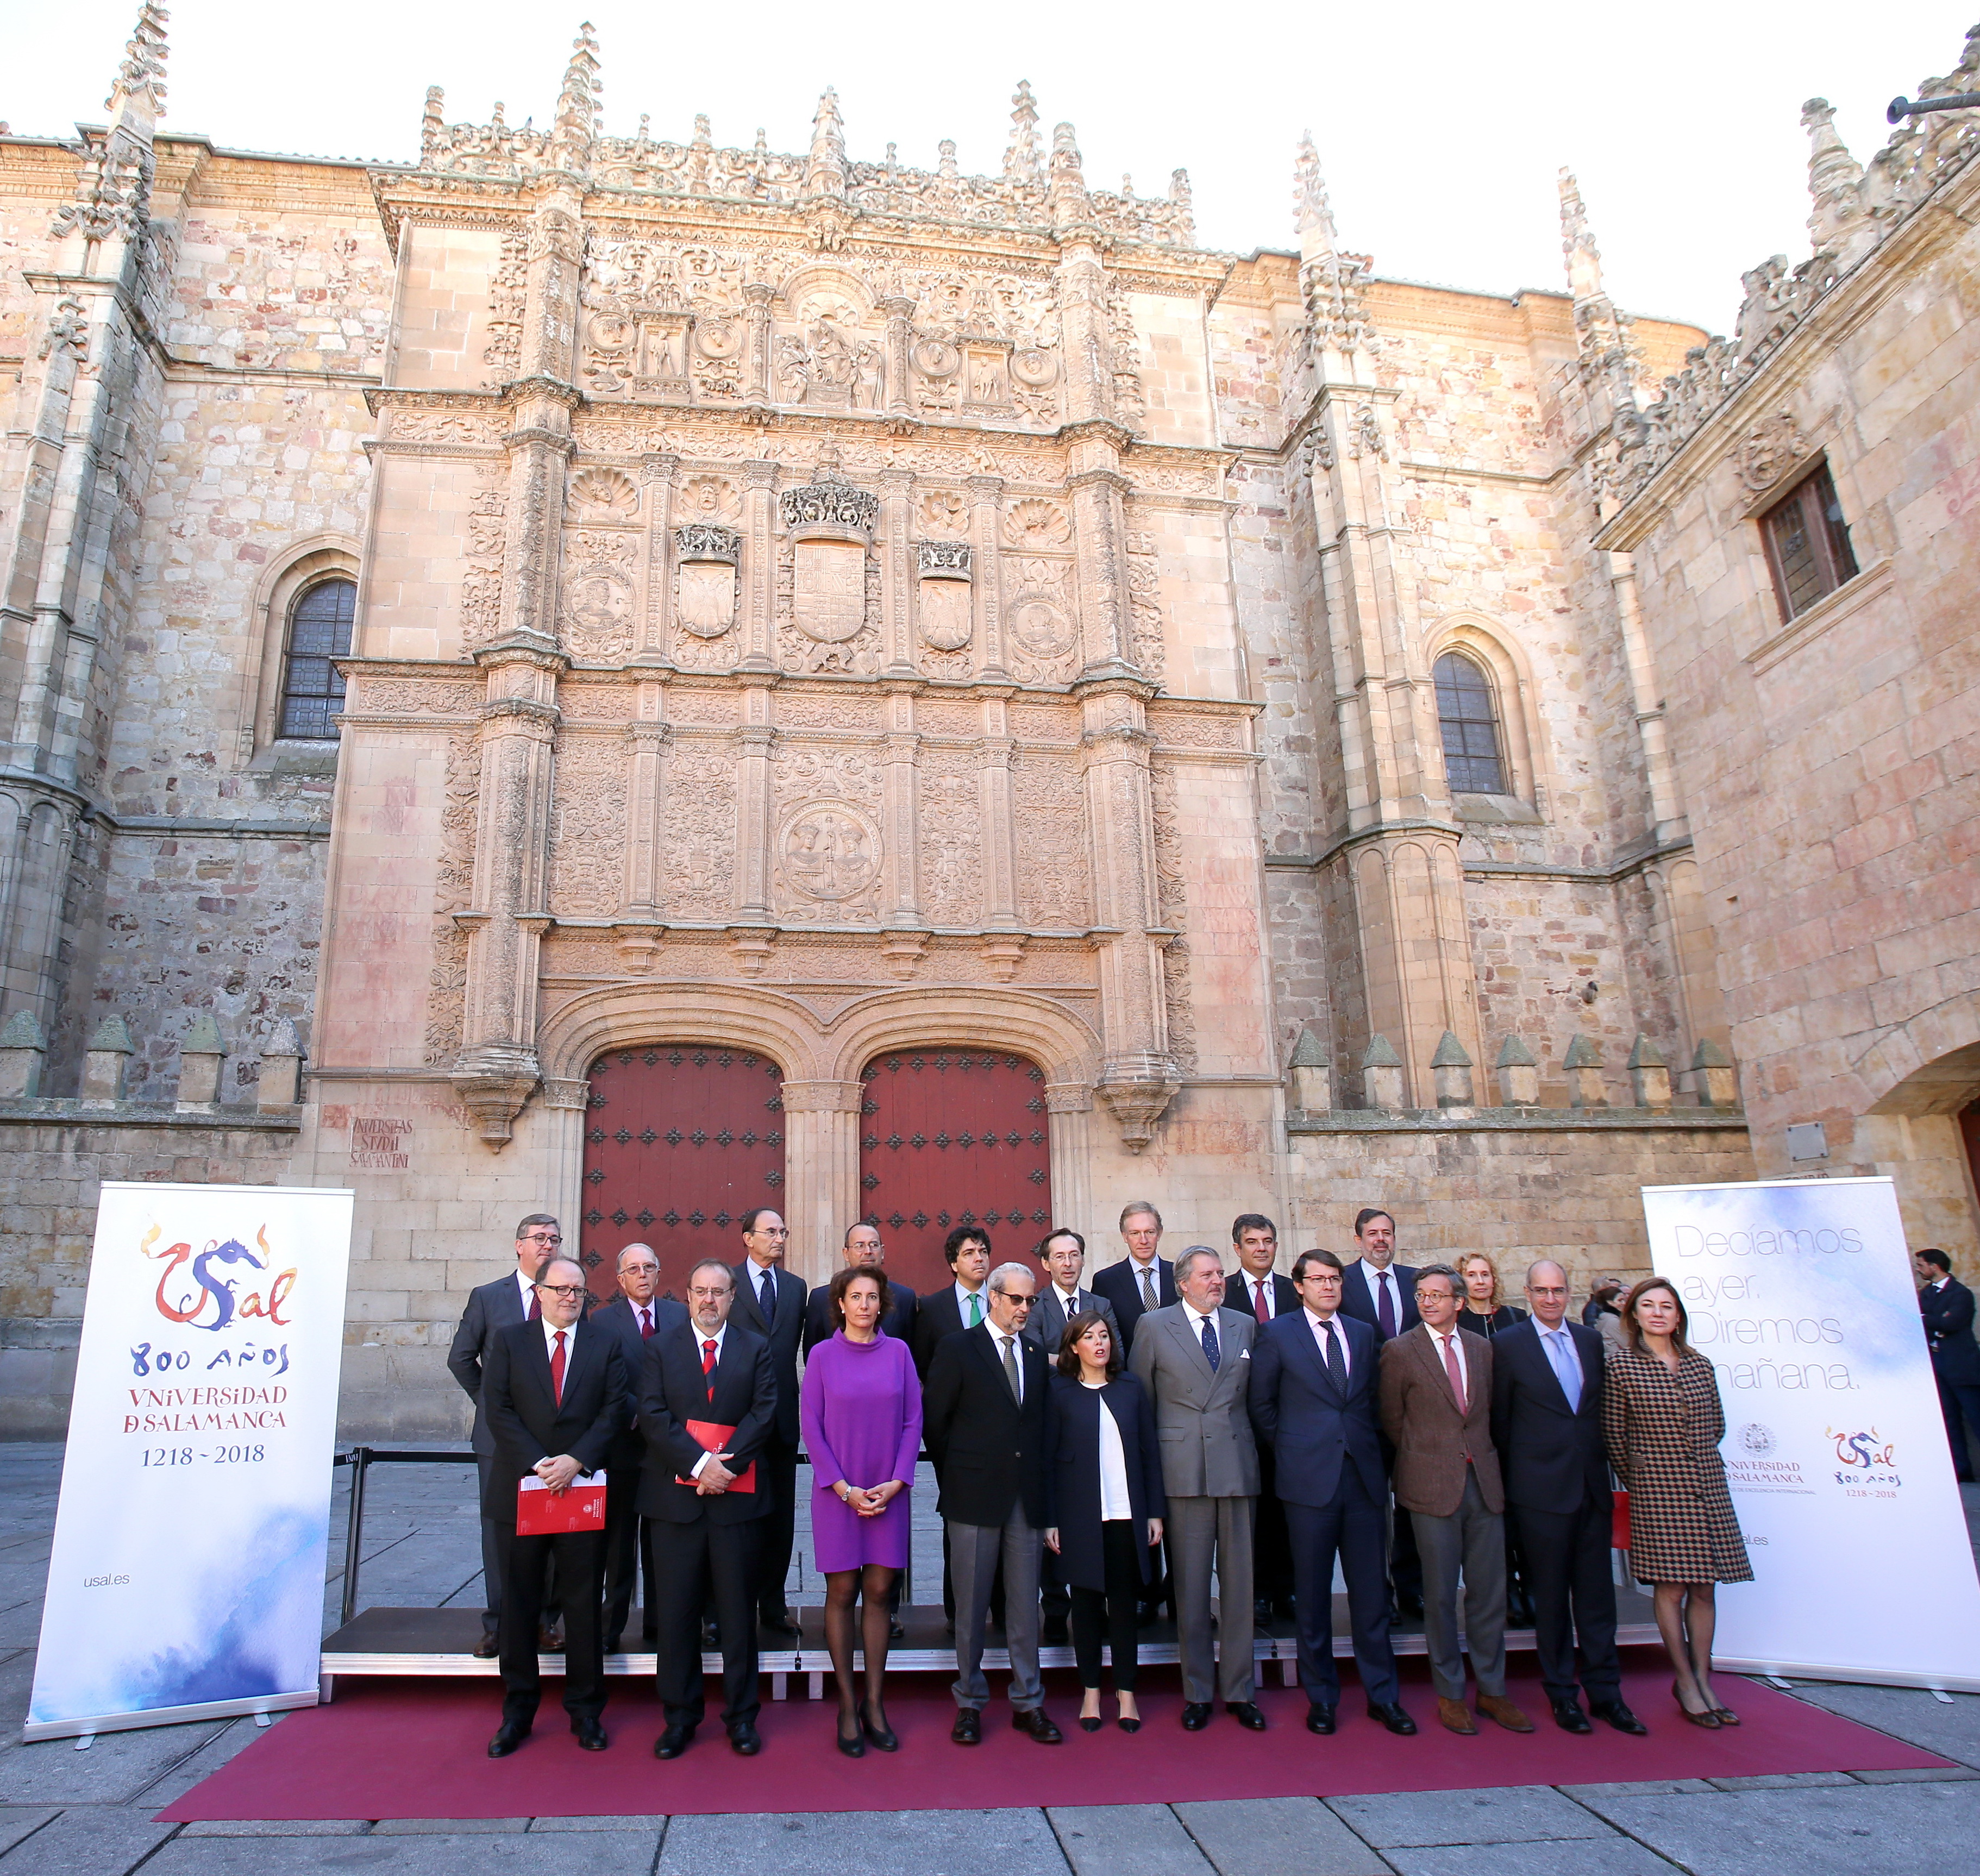 La Universidad de Salamanca plantea su VIII Centenario como una oportunidad para el impulso de la Universidad Española